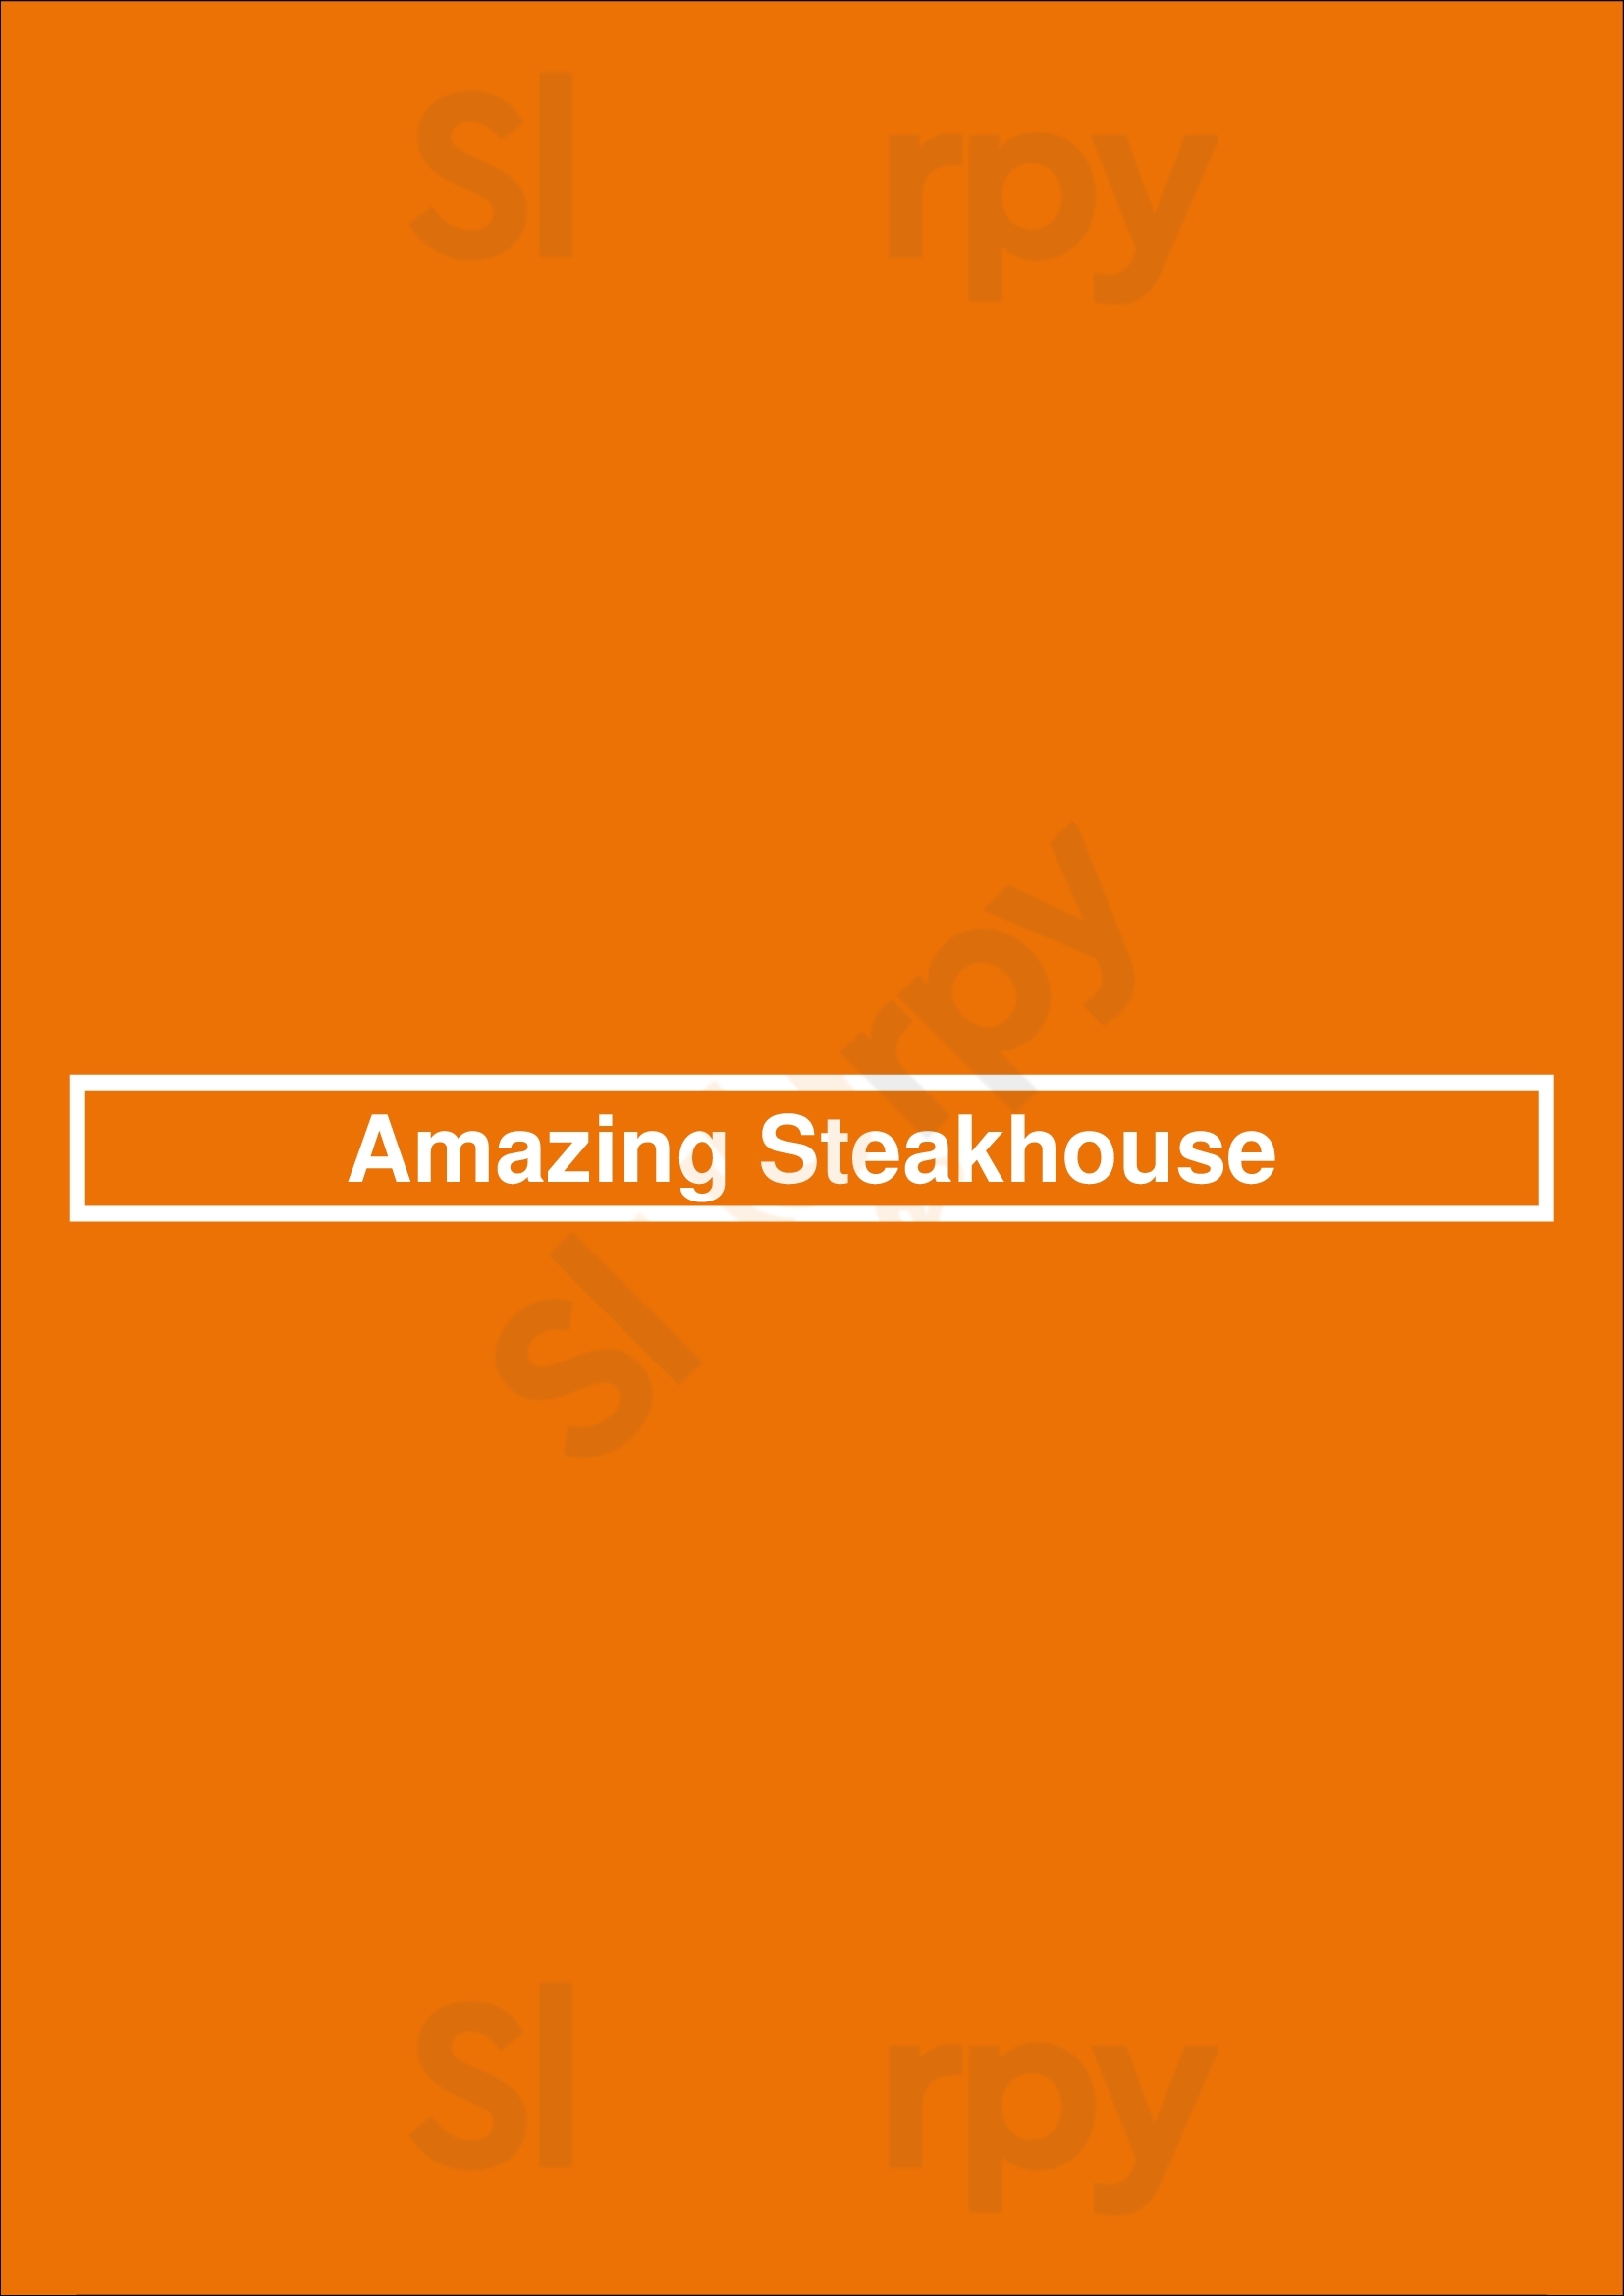 Amazing Steakhouse Westerbroek Menu - 1